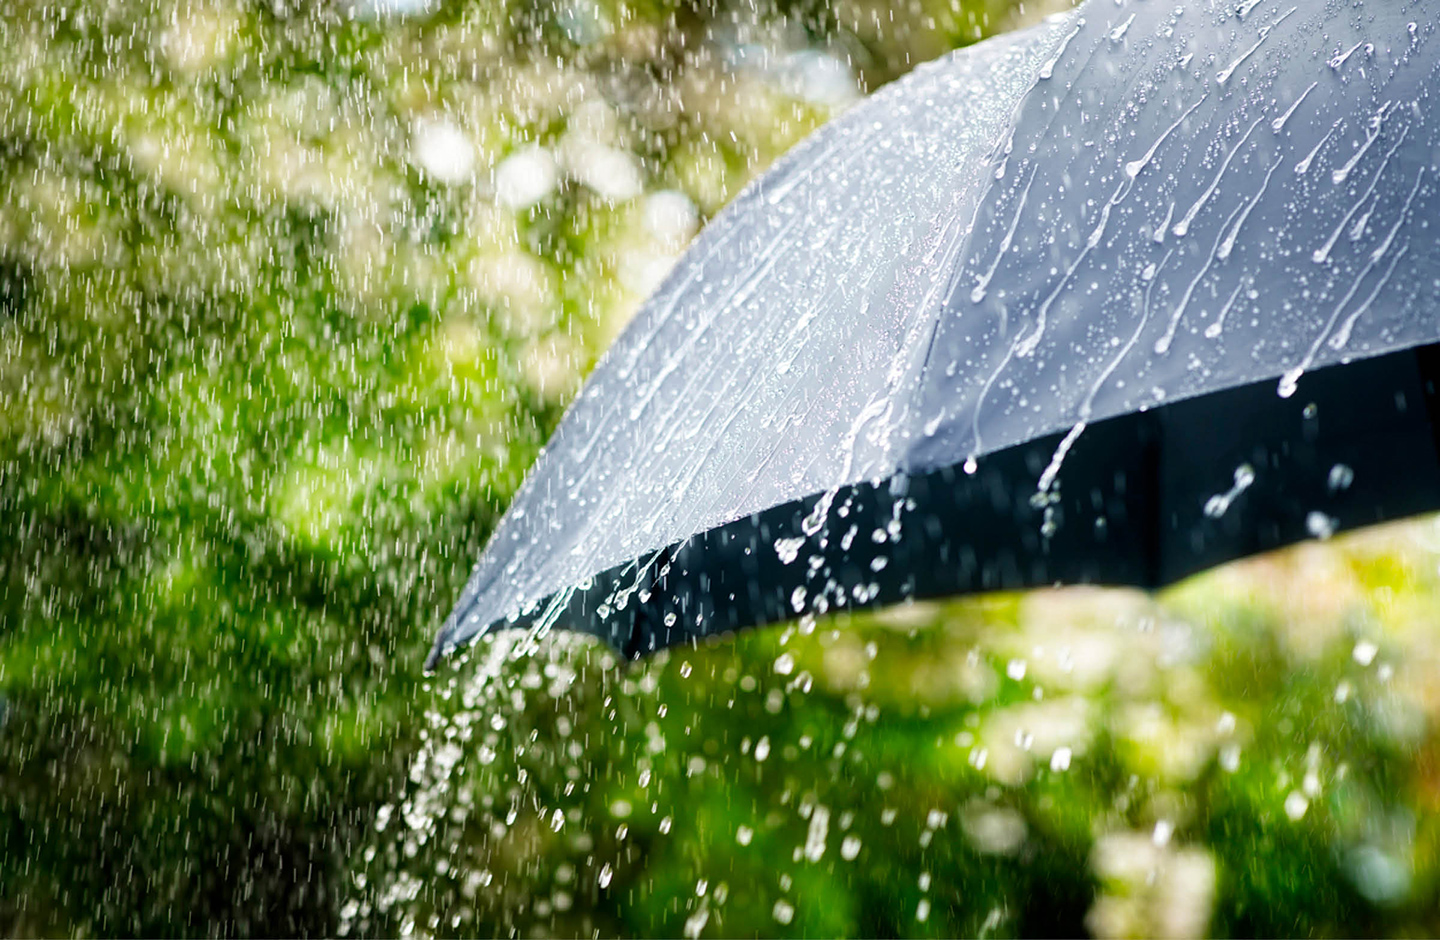 Detailaufnahme eines schwarzen Regenschirms, auf den der Regen prasselt. Im Hintergrund sind Umrisse eines Gartens zu sehen.